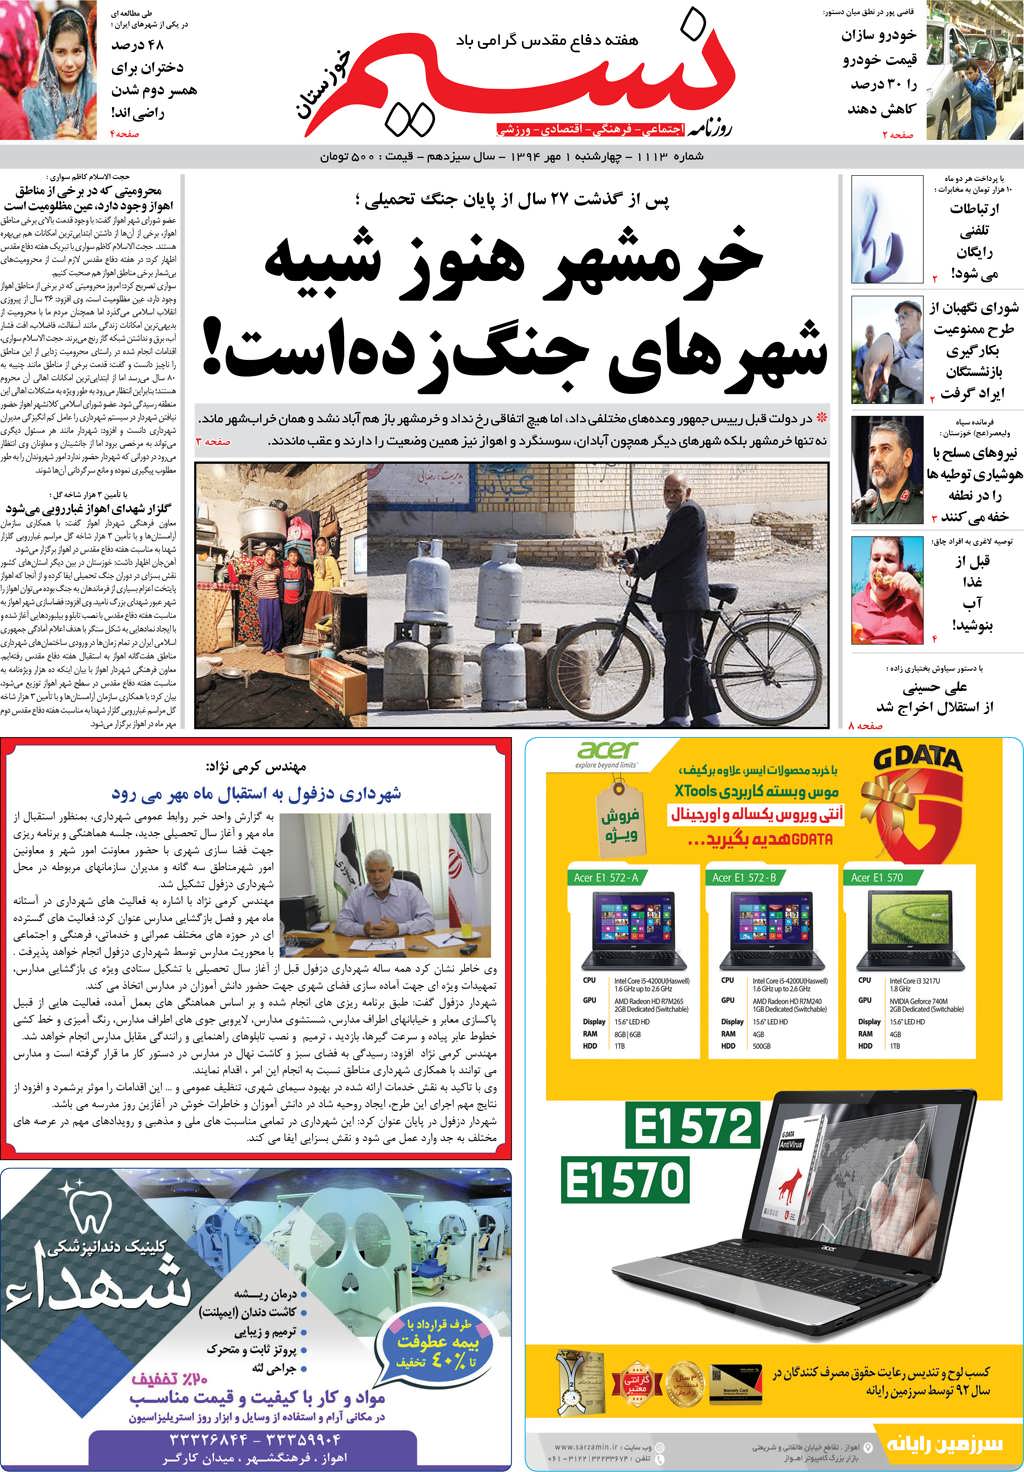 صفحه اصلی روزنامه نسیم شماره 1113